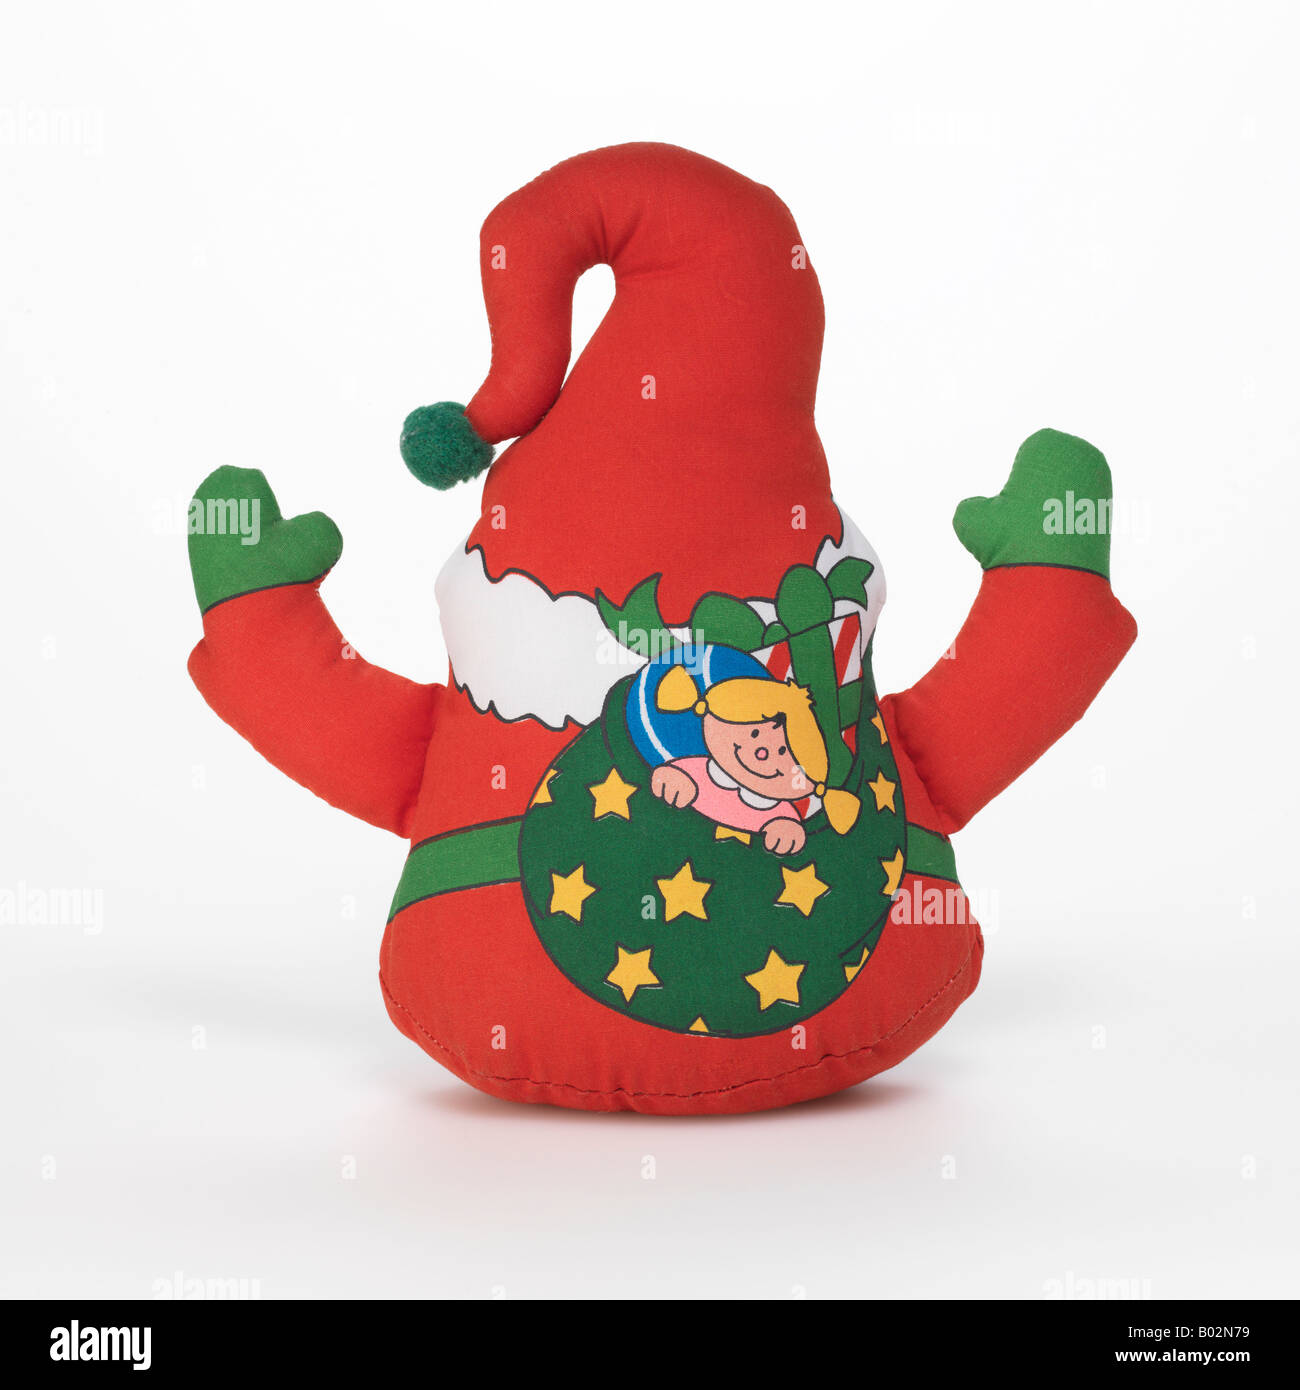 Santa Claus Christmas elf toy on white background Stock Photo